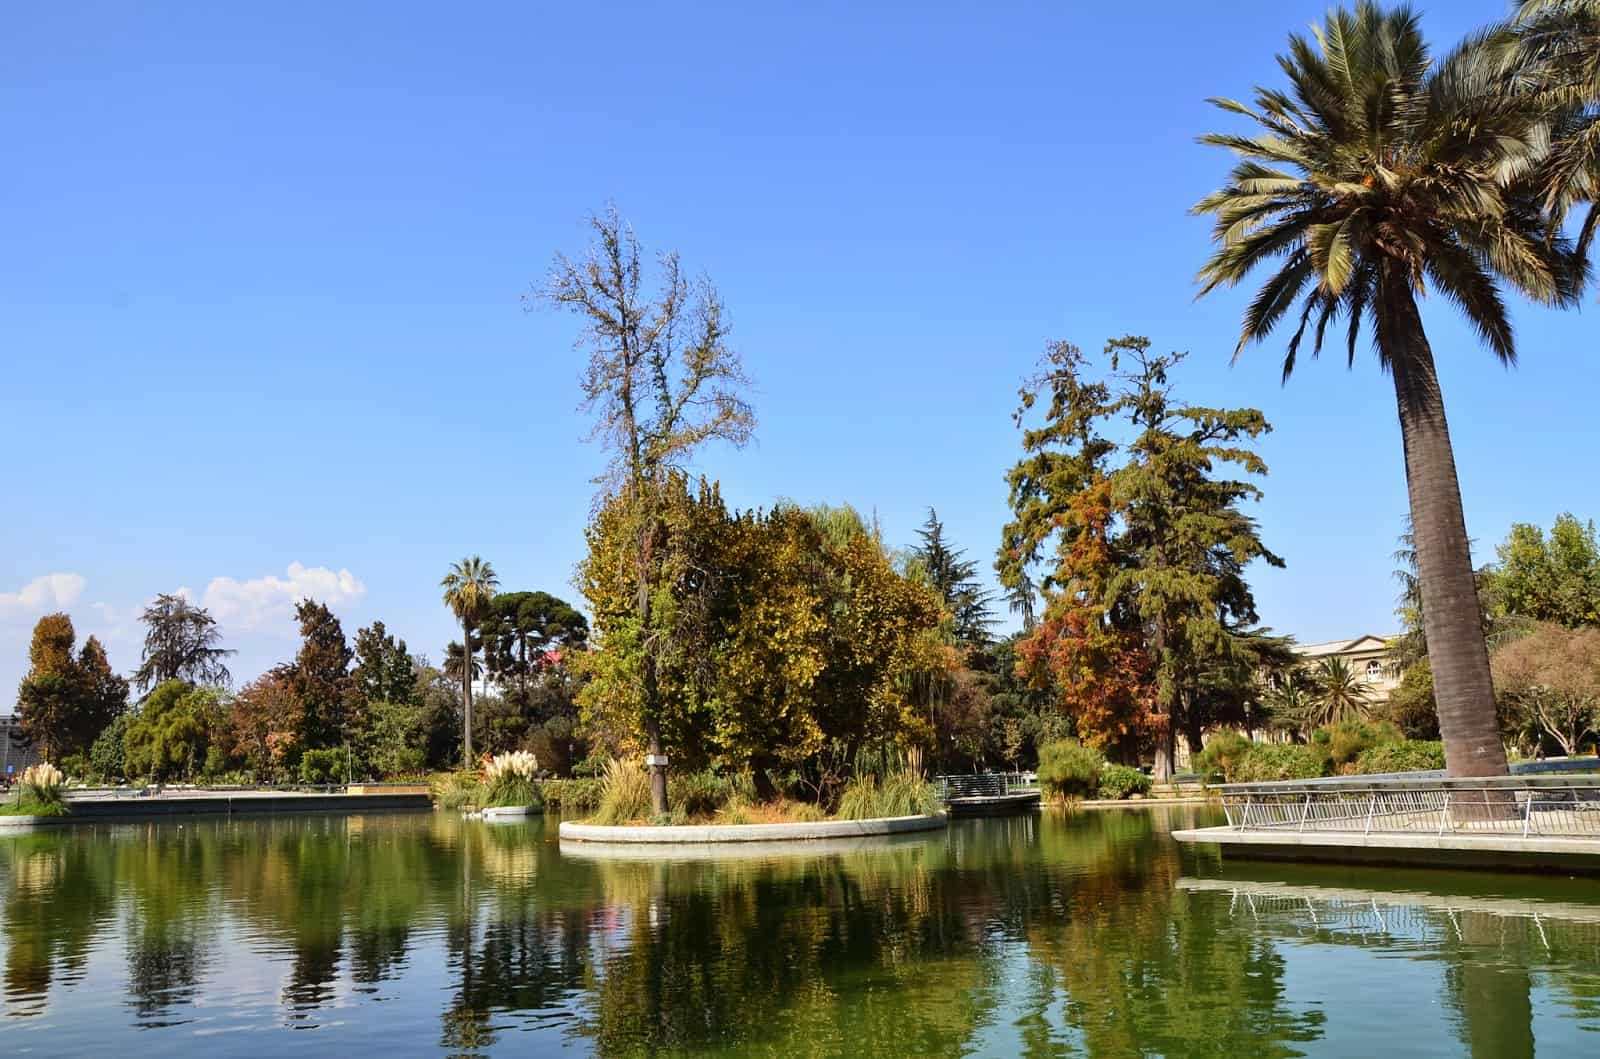 Parque Quinta Normal in Santiago de Chile